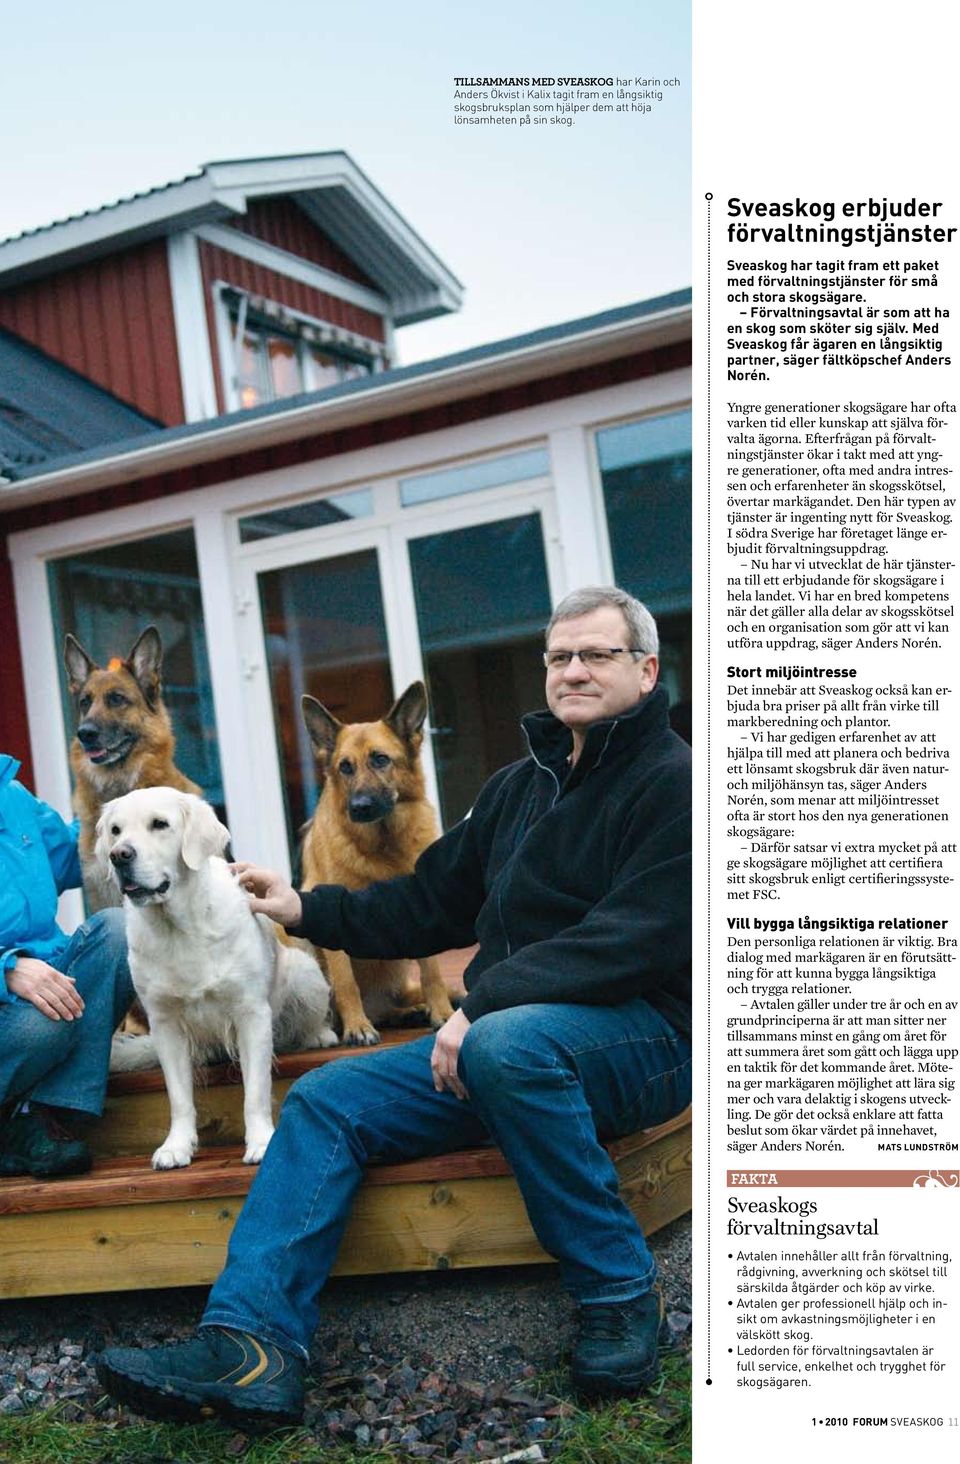 Med Sveaskog får ägaren en långsiktig partner, säger fältköpschef Anders Norén. Yngre generationer skogsägare har ofta varken tid eller kunskap att själva förvalta ägorna.